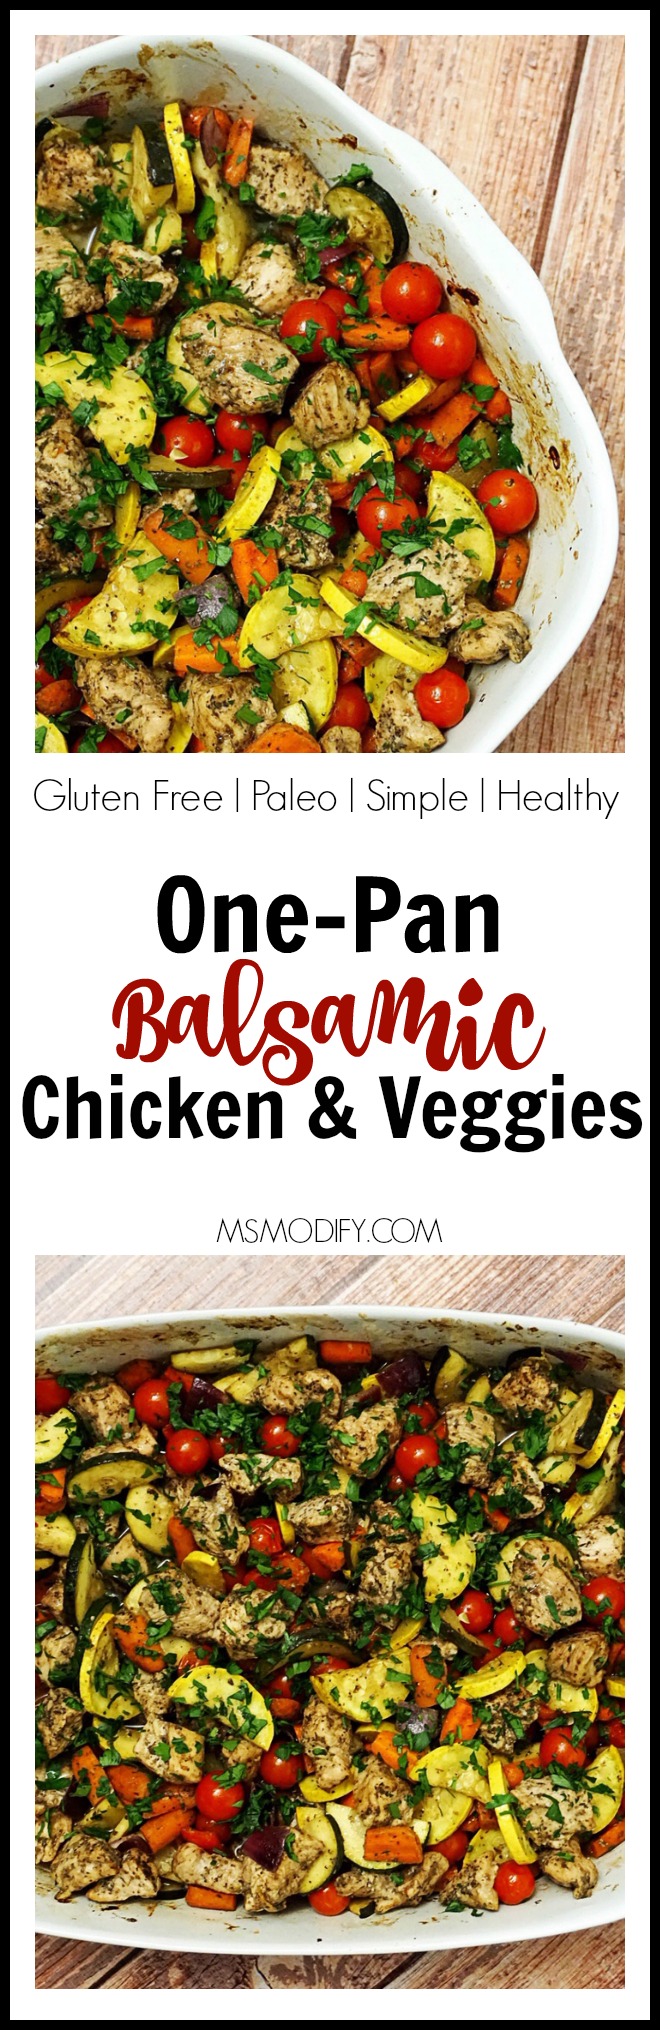 One-Pan Balsamic Chicken and Veggies